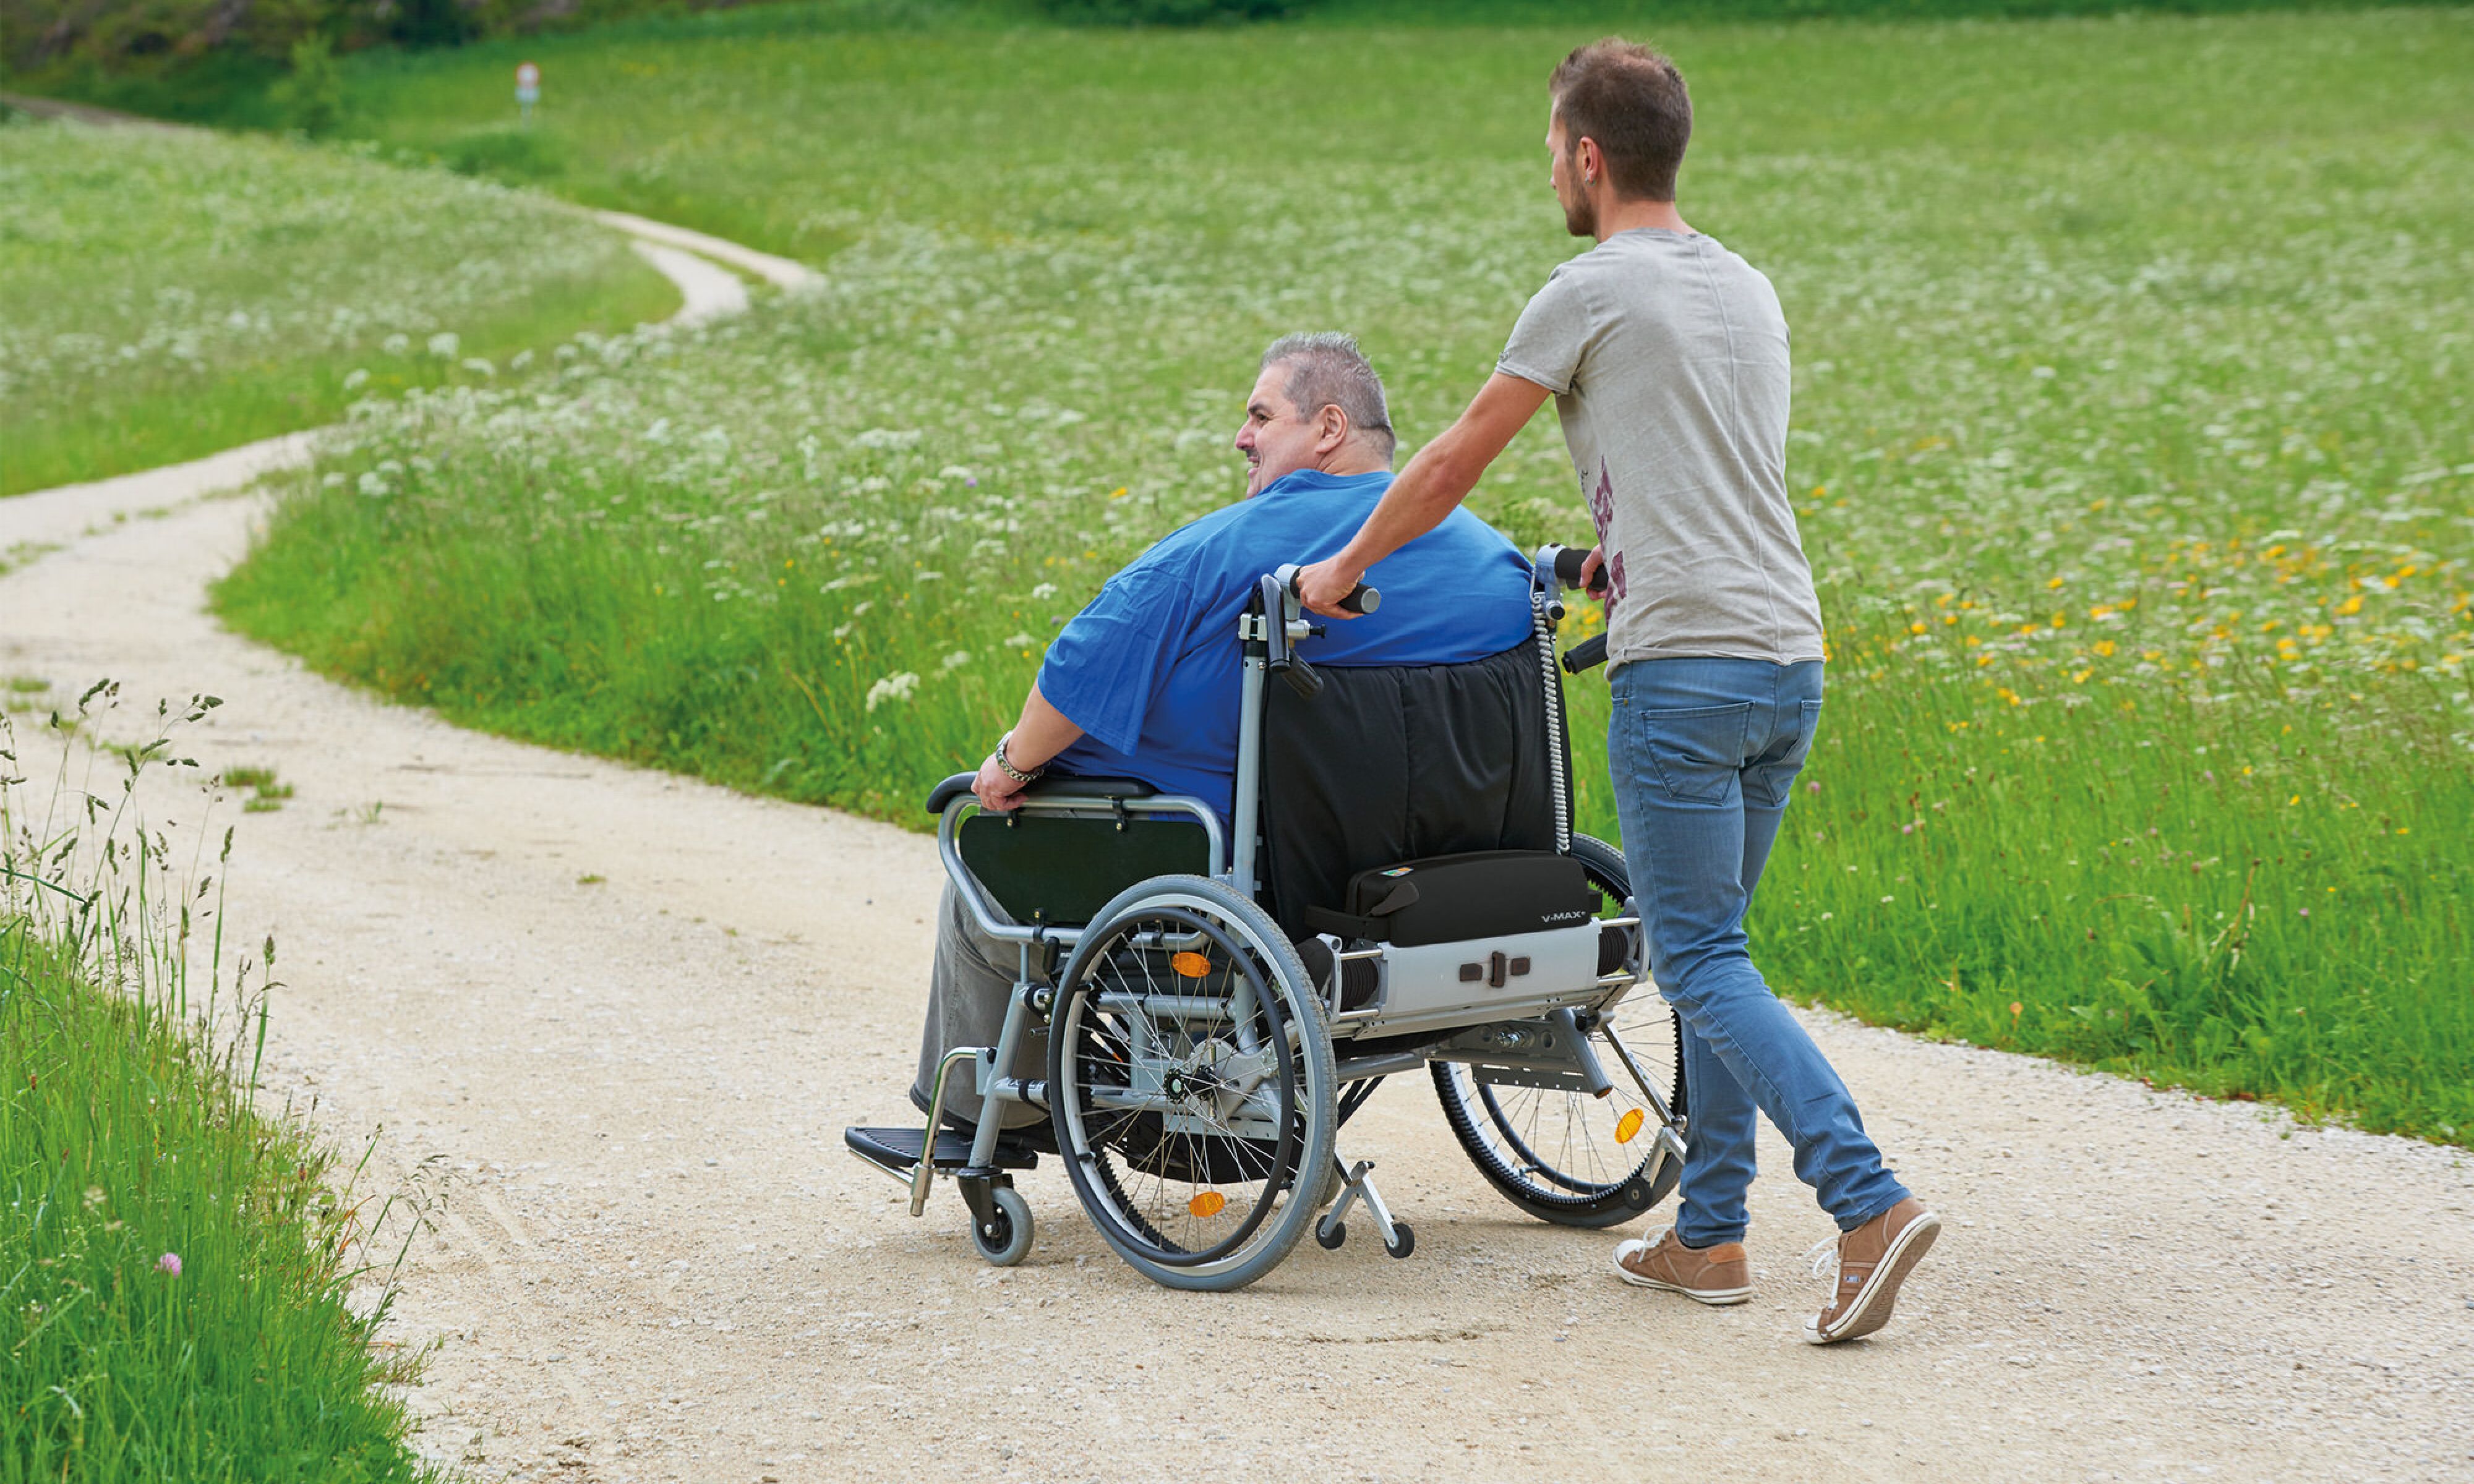 Das Bild zeigt einen sehr schlanken jungen Mann, der einen Rollstuhlfahrer mittleren Alters in einem sehr breiten Rollstuhl aufwandslos schiebt. Der Rollstuhlinsasse nutzt aufgrund seines hohen Körpergewichtes einen Rollstuhl mit Zusatzantrieb V-MAX+, der speziell für Adipositas entwickelt wurde.